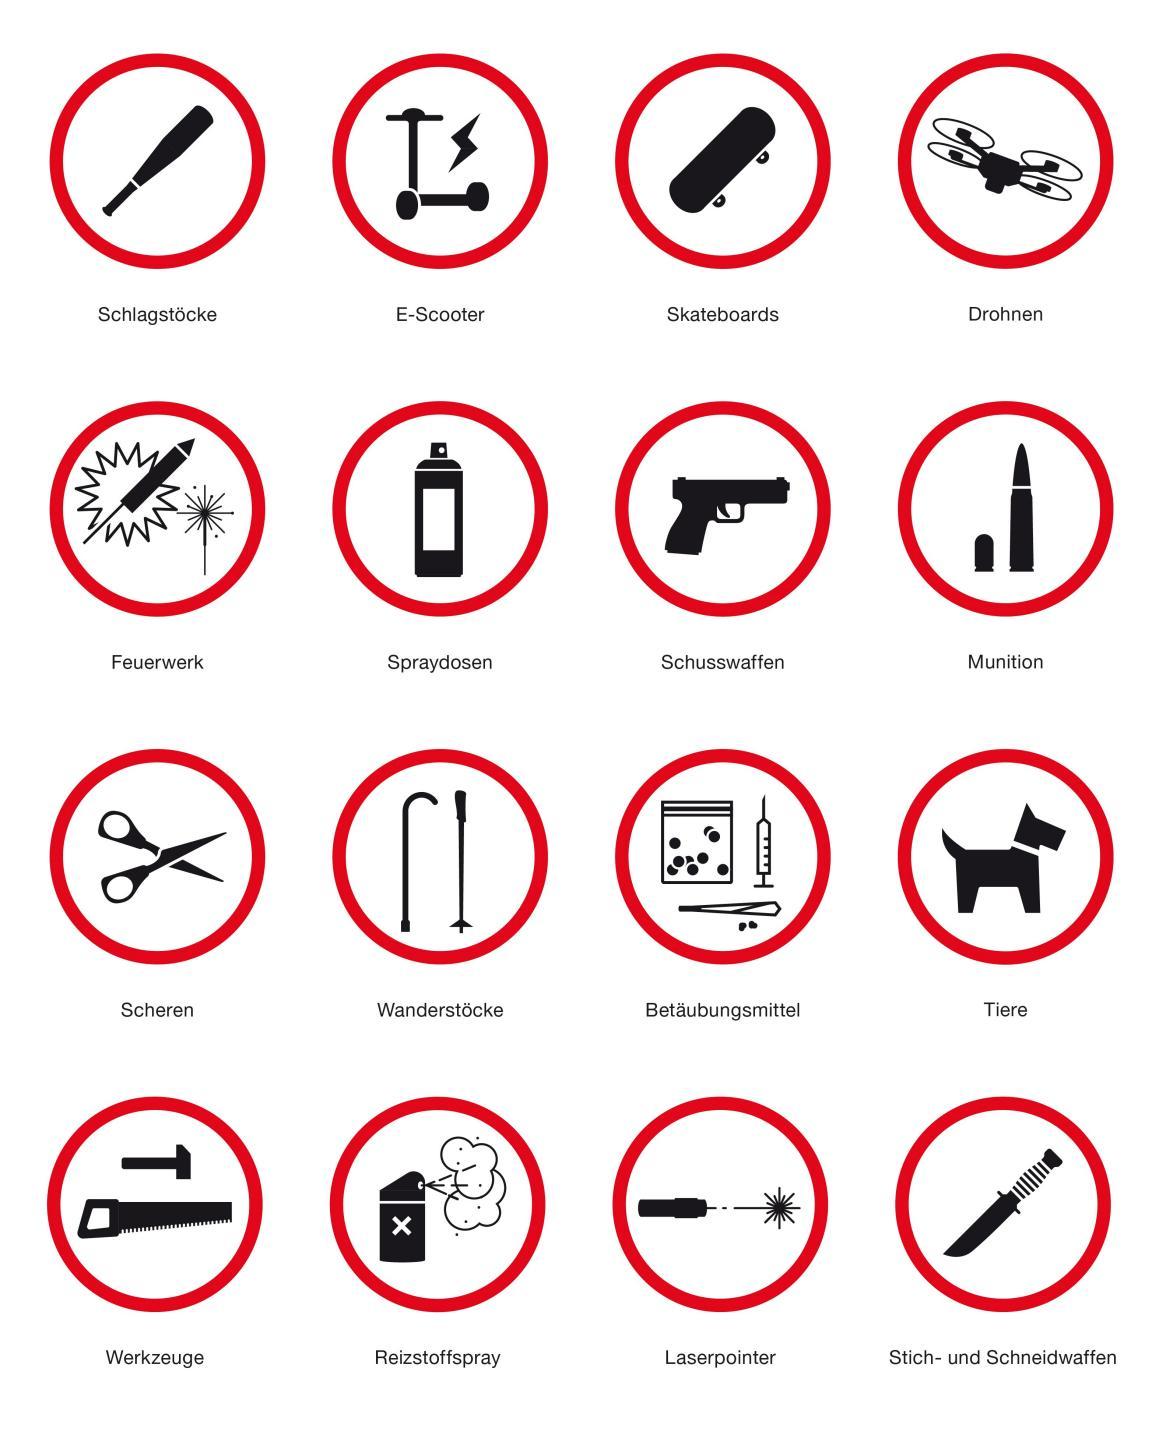 Gegenstände, welche nicht ins PJZ mitgenommen werden dürfen, sind: Schlagstöcke, E-Scooter, Skateboards, Drohnen, Feuerwerk, Spraydosen, Schusswaffen, Munition, Scheren, Wanderstöcke, Betäubungsmittel, Tiere, Werkzeuge, Reizstoffspray, Laserpointer sowie Stich- und Schneidwaffen.